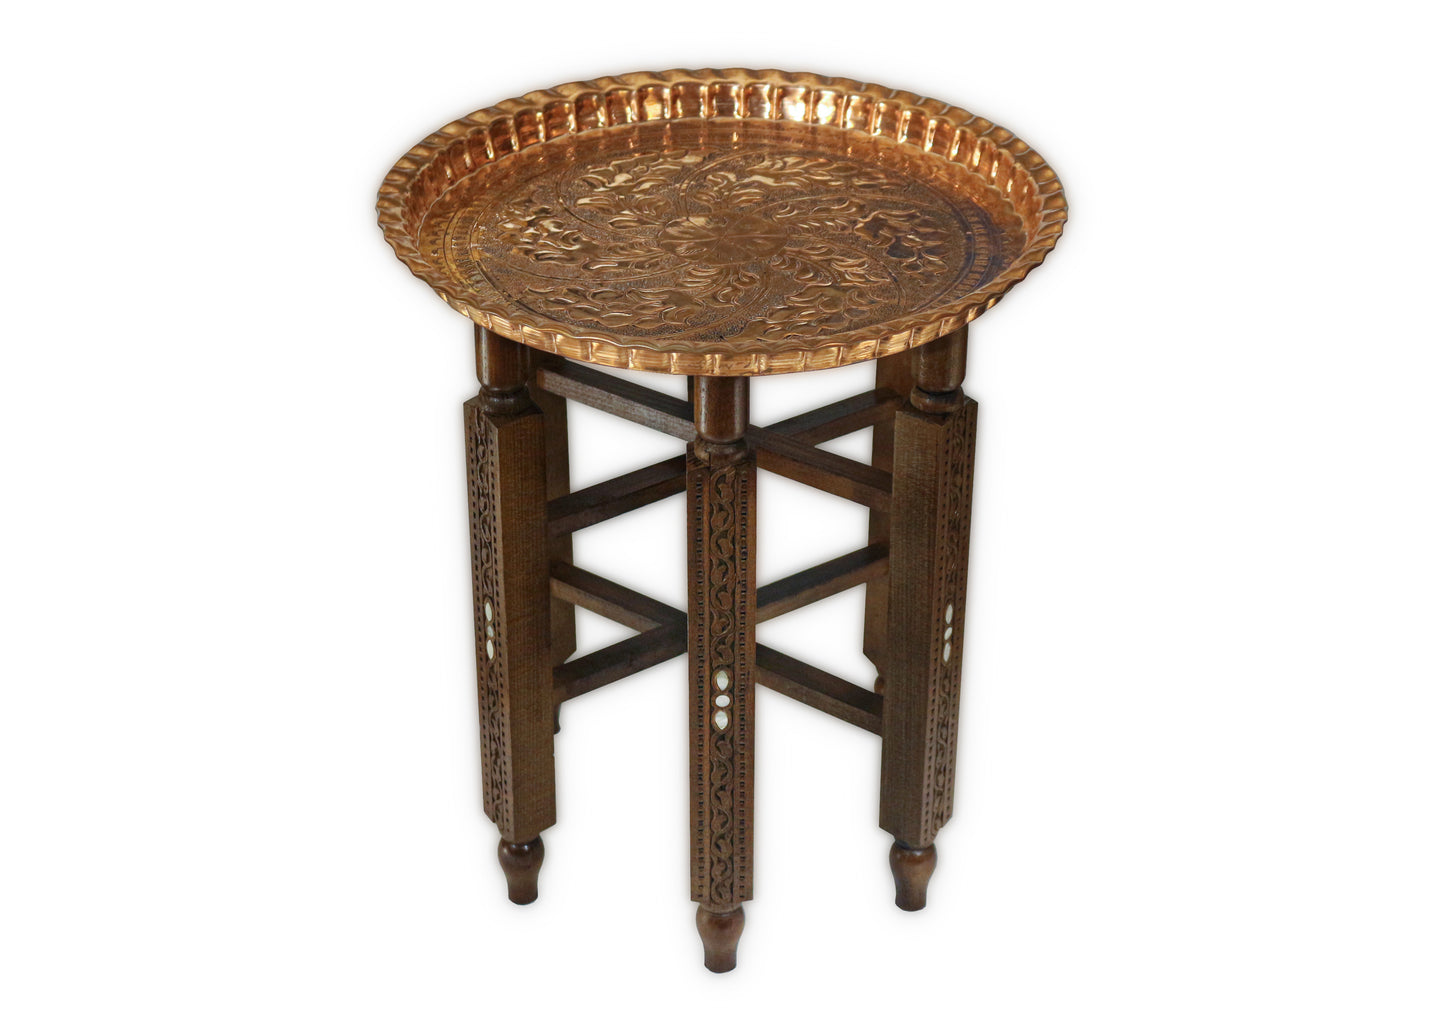 Orientalisch Beistelltisch,Tischgestell aus massivem Holz mit Tablett aus Kupfer, Teetisch Damaskunst HK 411